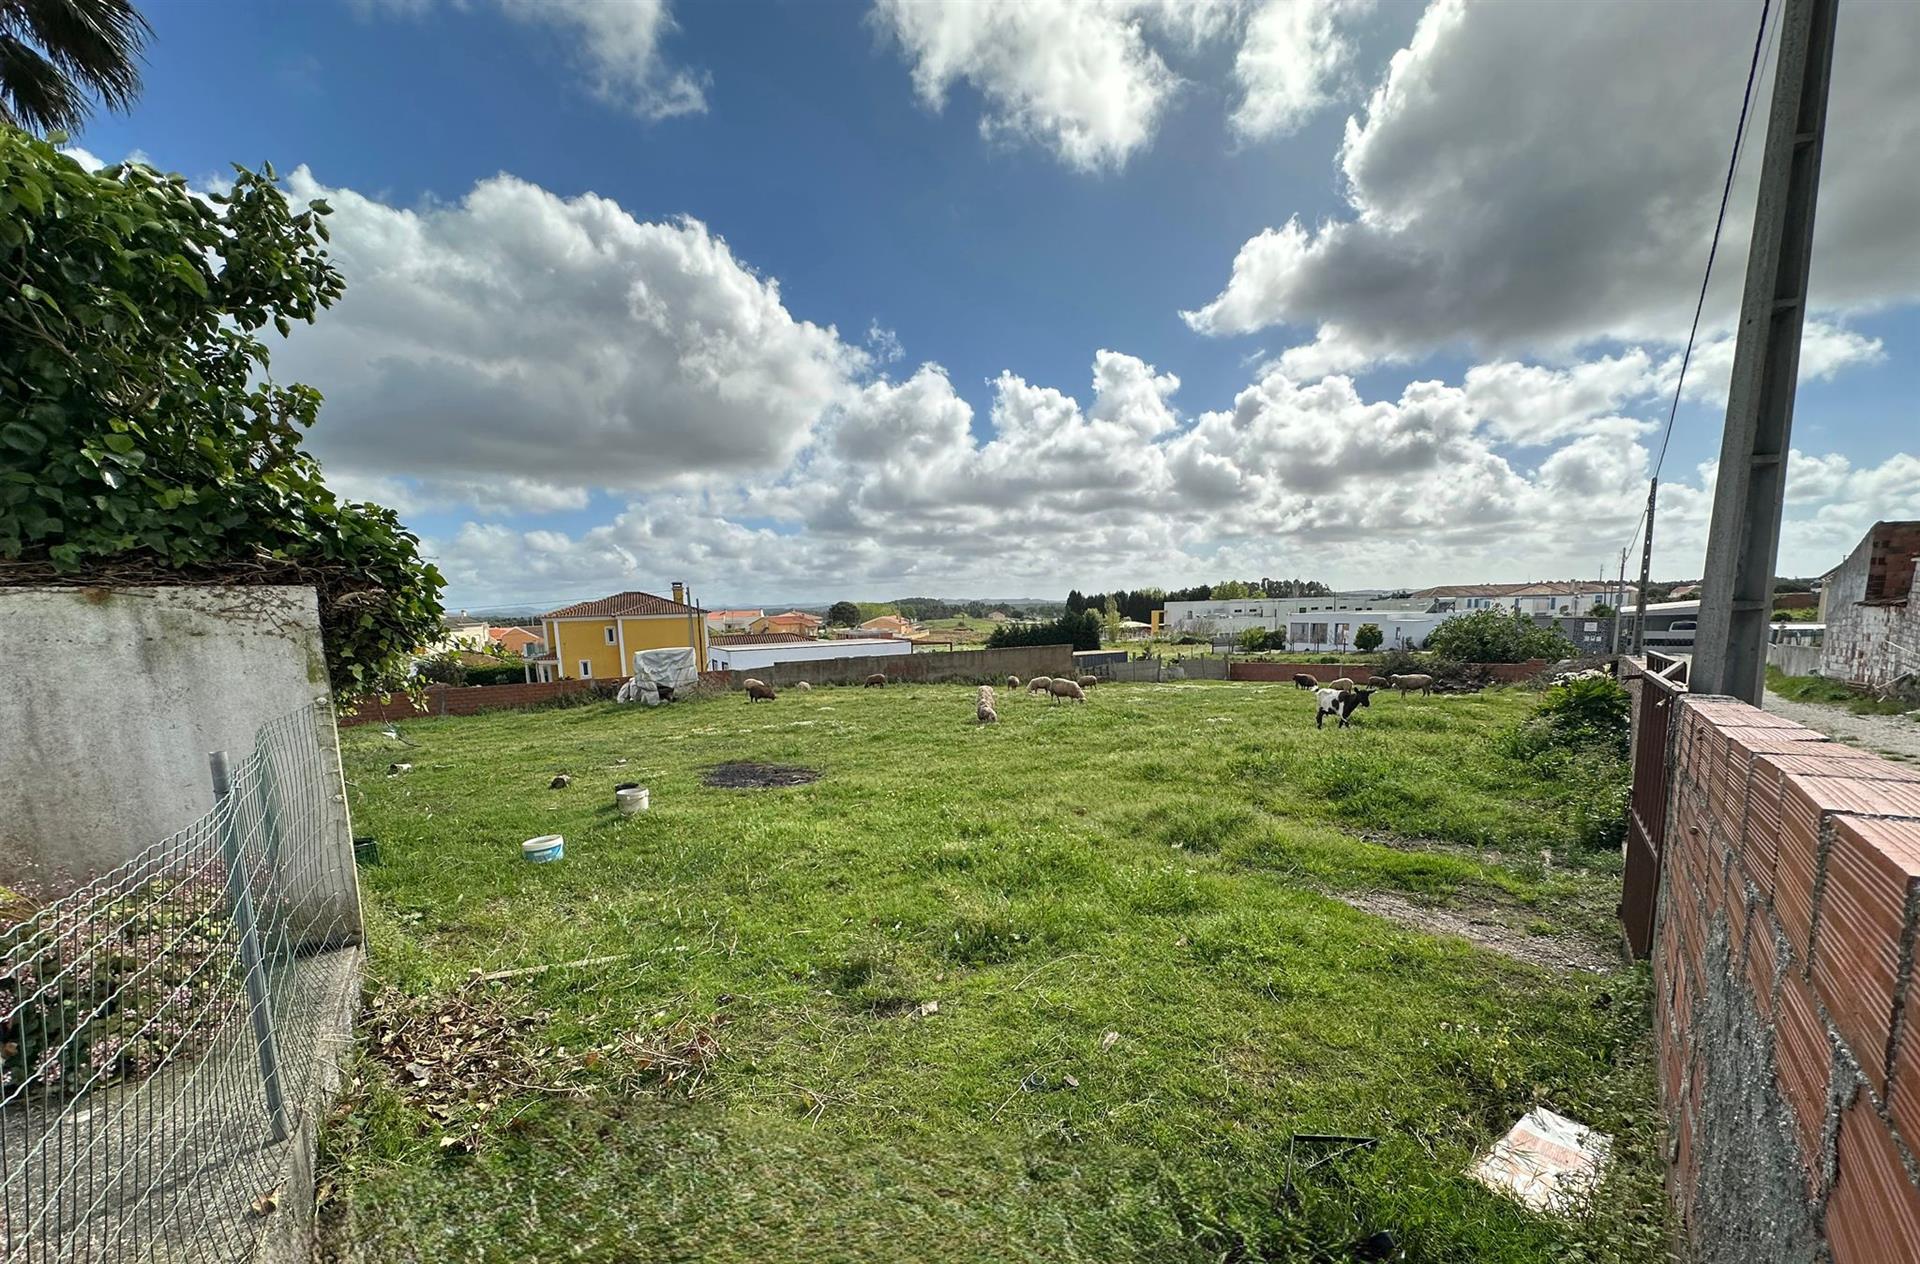 Parcela de terreno para desarrollo de viviendas, centro de la ciudad, cerca de Torres Vedras